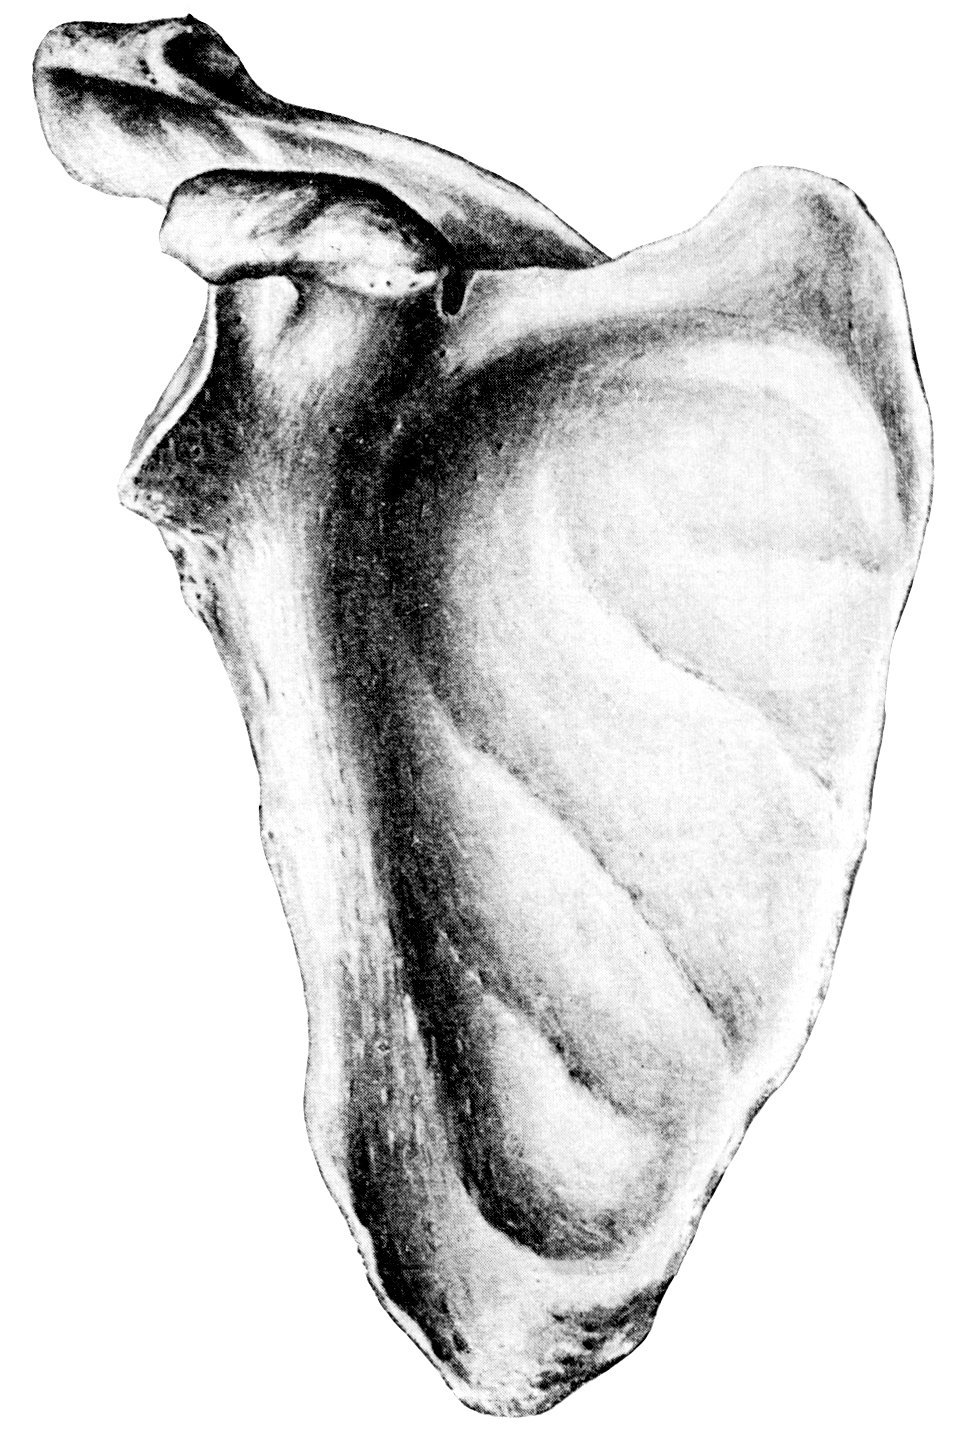 Лопатка человека анатомия